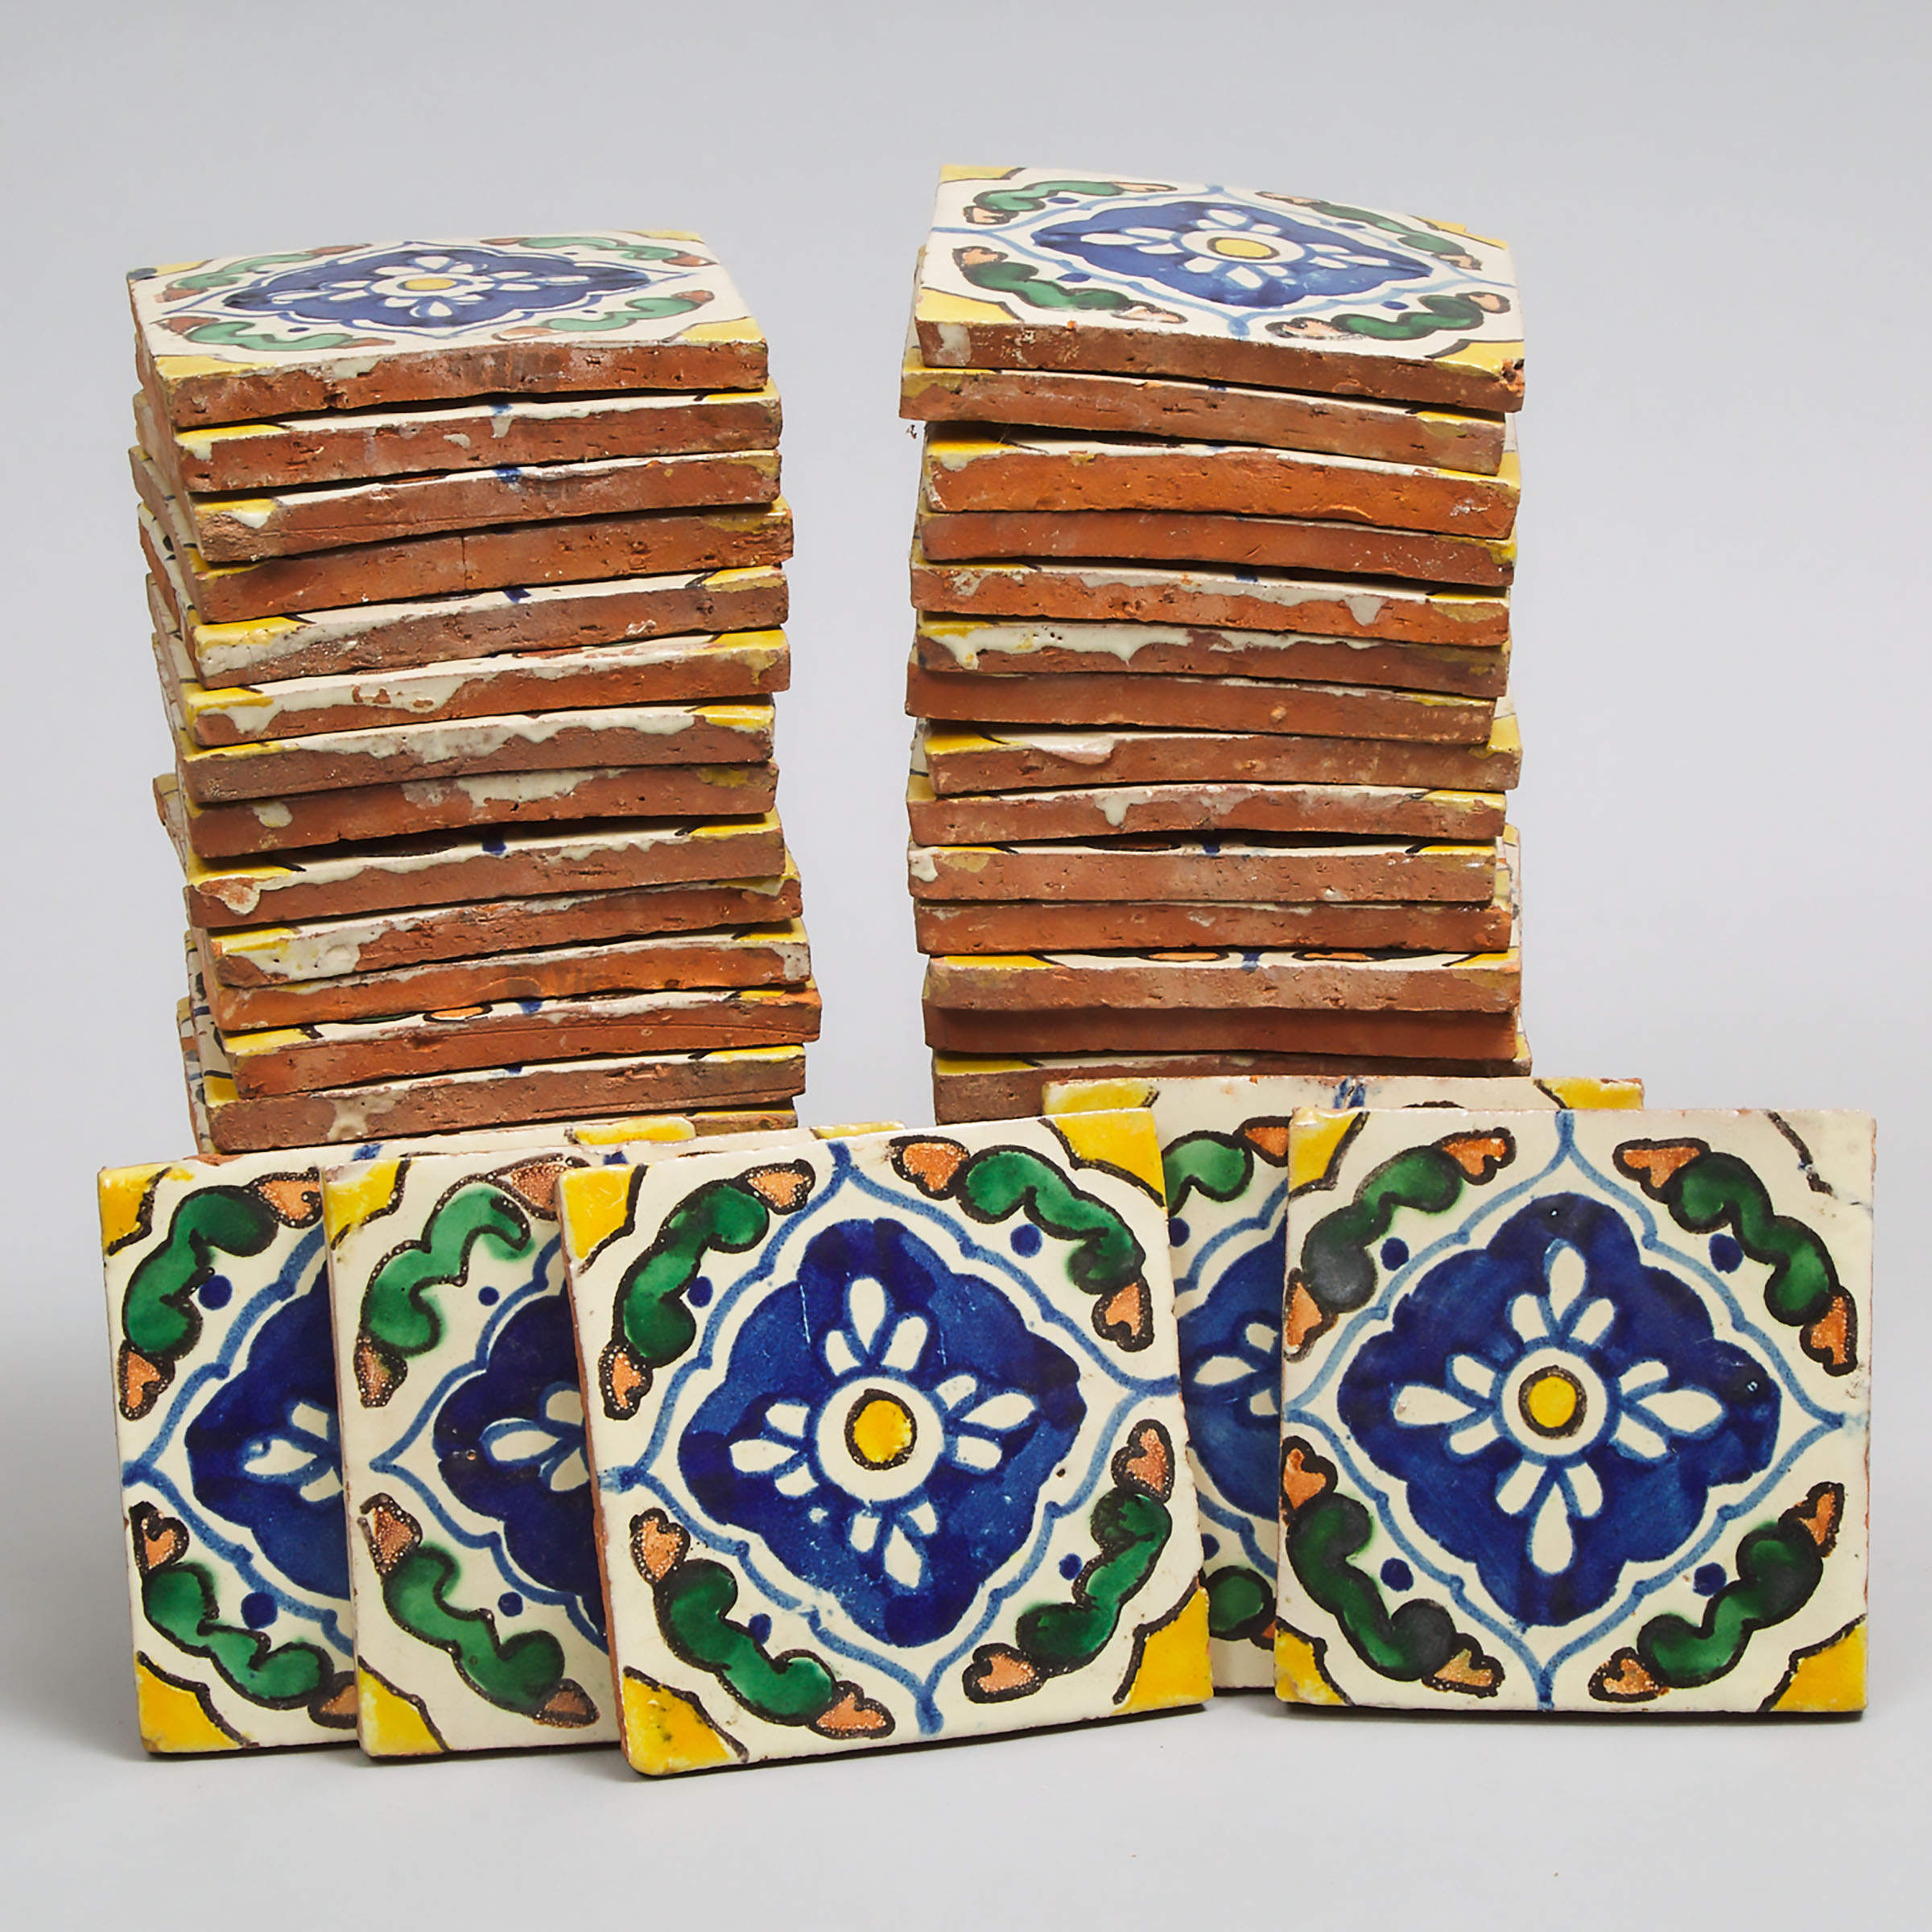 Fifty Italian Pottery Decorative Wall Tiles, 20th century